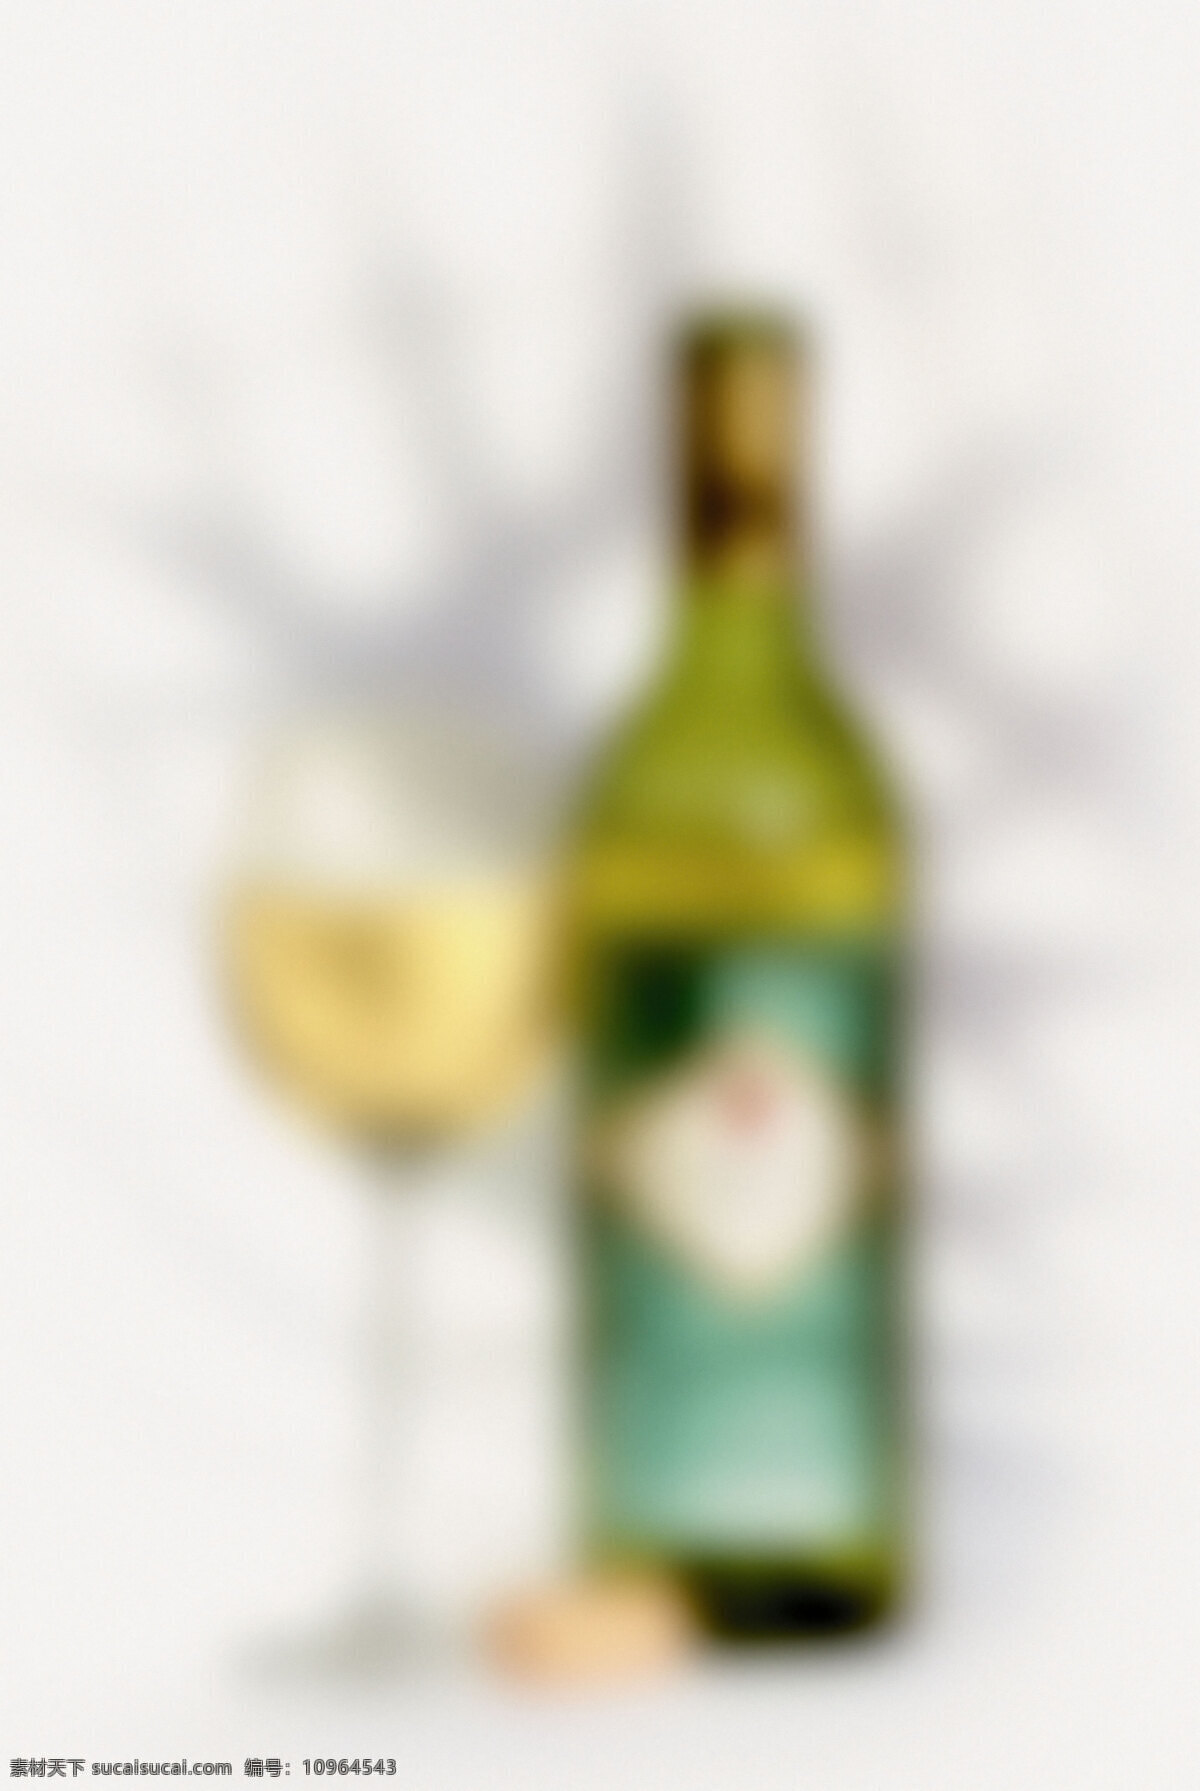 不 对焦 酒瓶 酒杯 高清图片 竖构图 浅金黄色的酒 美酒 葡萄酒 浪漫 情调 创意设计 一杯 一杯酒 玻璃杯 高脚杯 酒 瓶塞 一个 琥珀色的酒 模糊 不对焦 酒类图片 餐饮美食